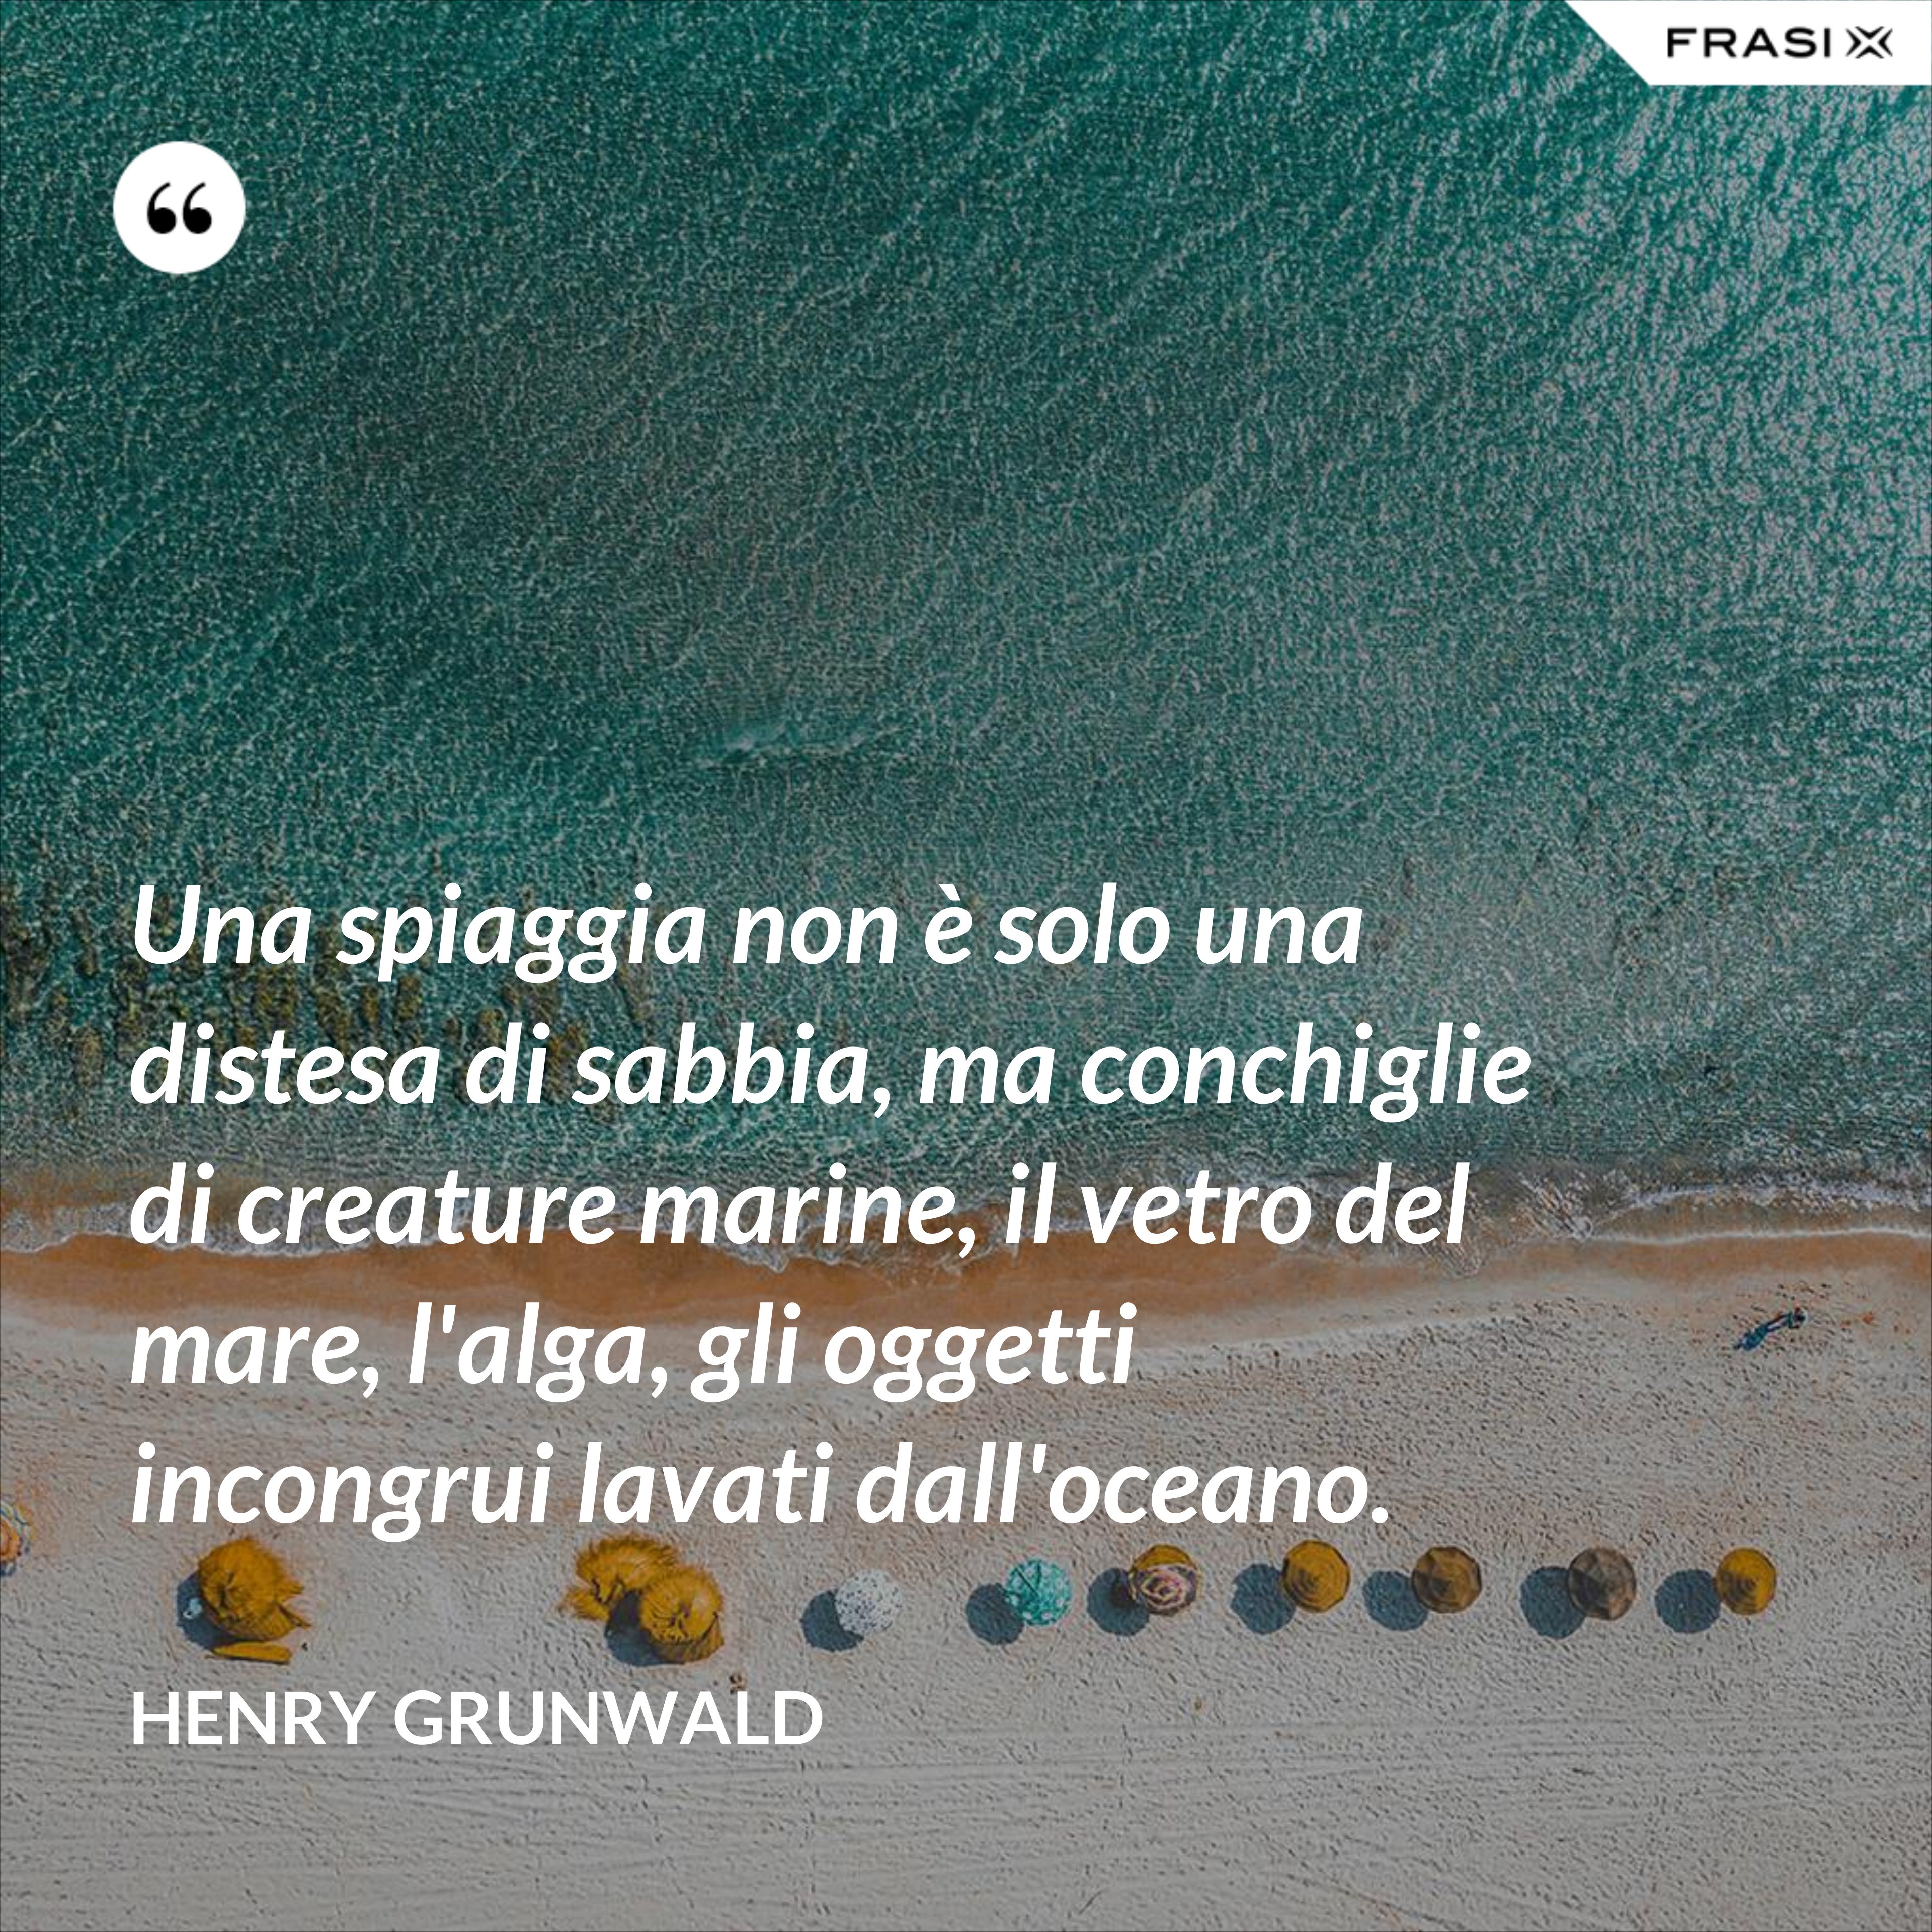 Una spiaggia non è solo una distesa di sabbia, ma conchiglie di creature marine, il vetro del mare, l'alga, gli oggetti incongrui lavati dall'oceano. - Henry Grunwald